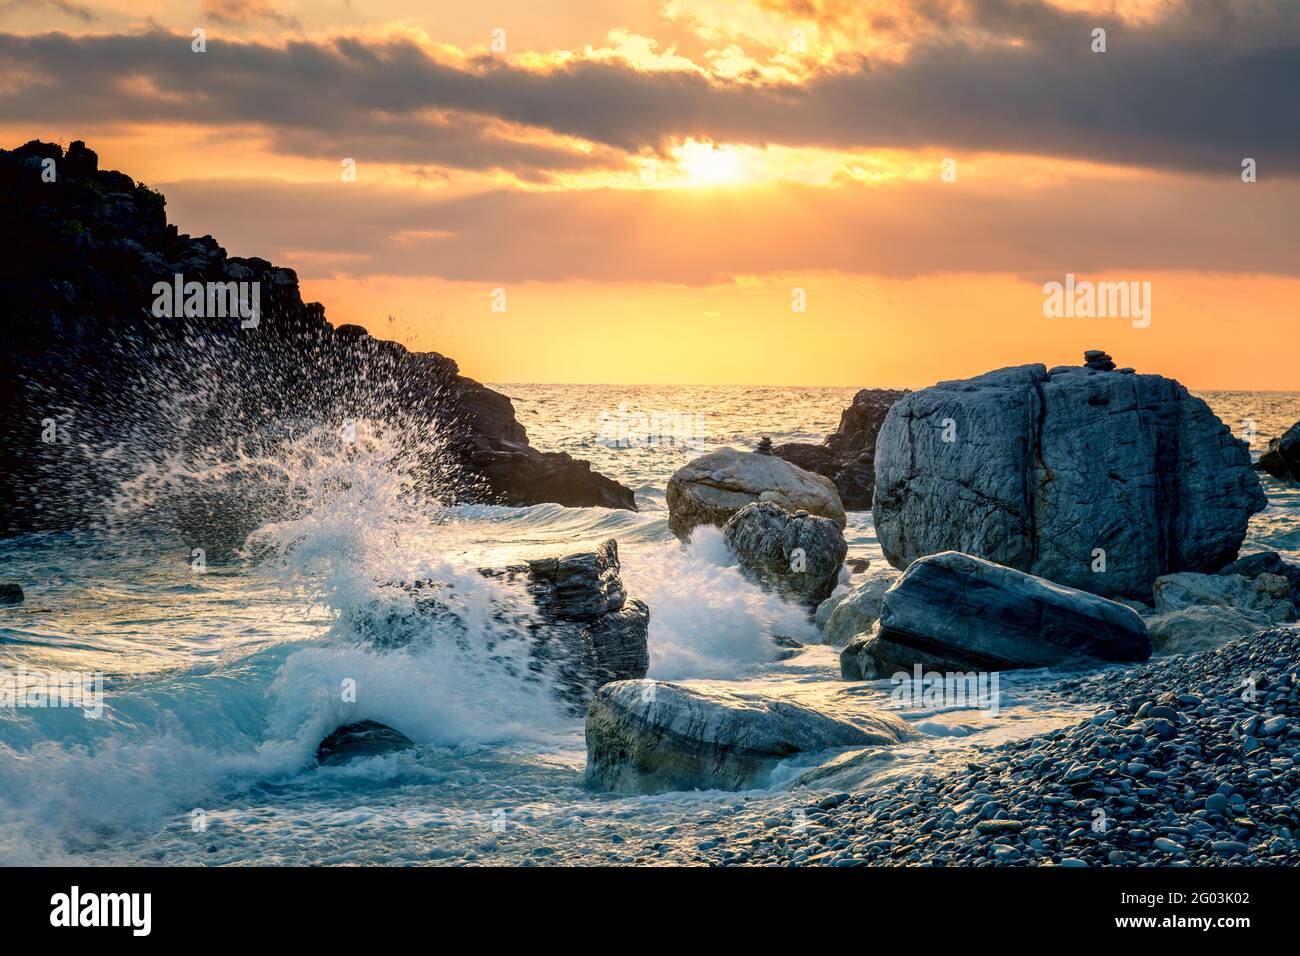 Tempesta Ocean Wave ha colpito la roccia in spiaggia, acqua di mare splash fino al cielo con il sole. Tramonto tramonto tramonto al mare. Tempesta. Stagcape. Mettere a fuoco in primo piano Foto Stock